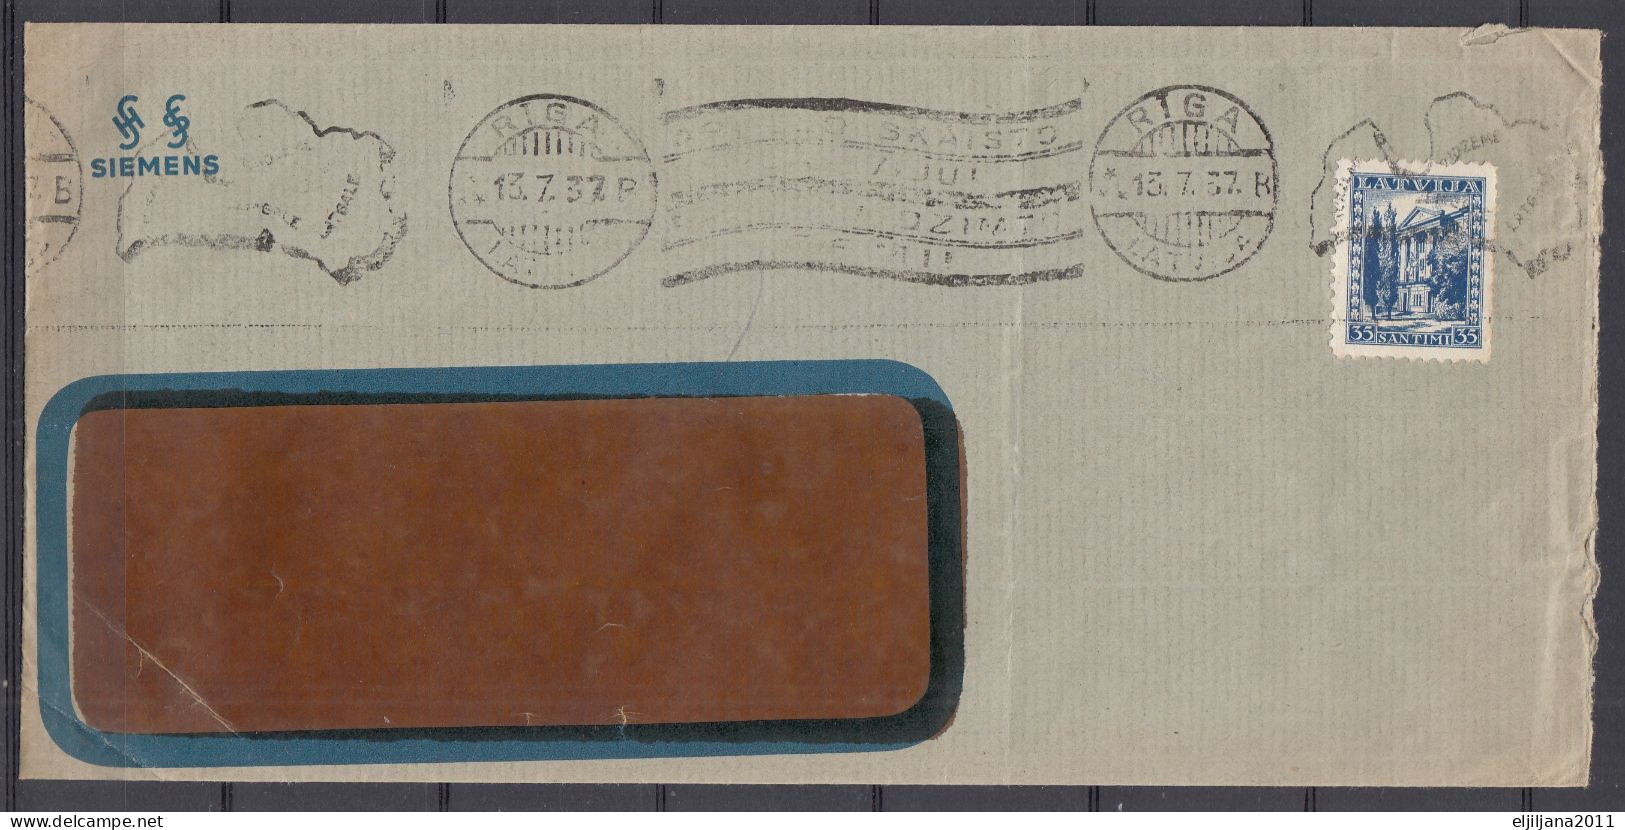 ⁕ Latvia / Lettland 1937 ⁕ Mi.236 On Business Cover, Window - SIEMENS, Postmark RIGA ⁕ 2v Used - See Scan - Latvia